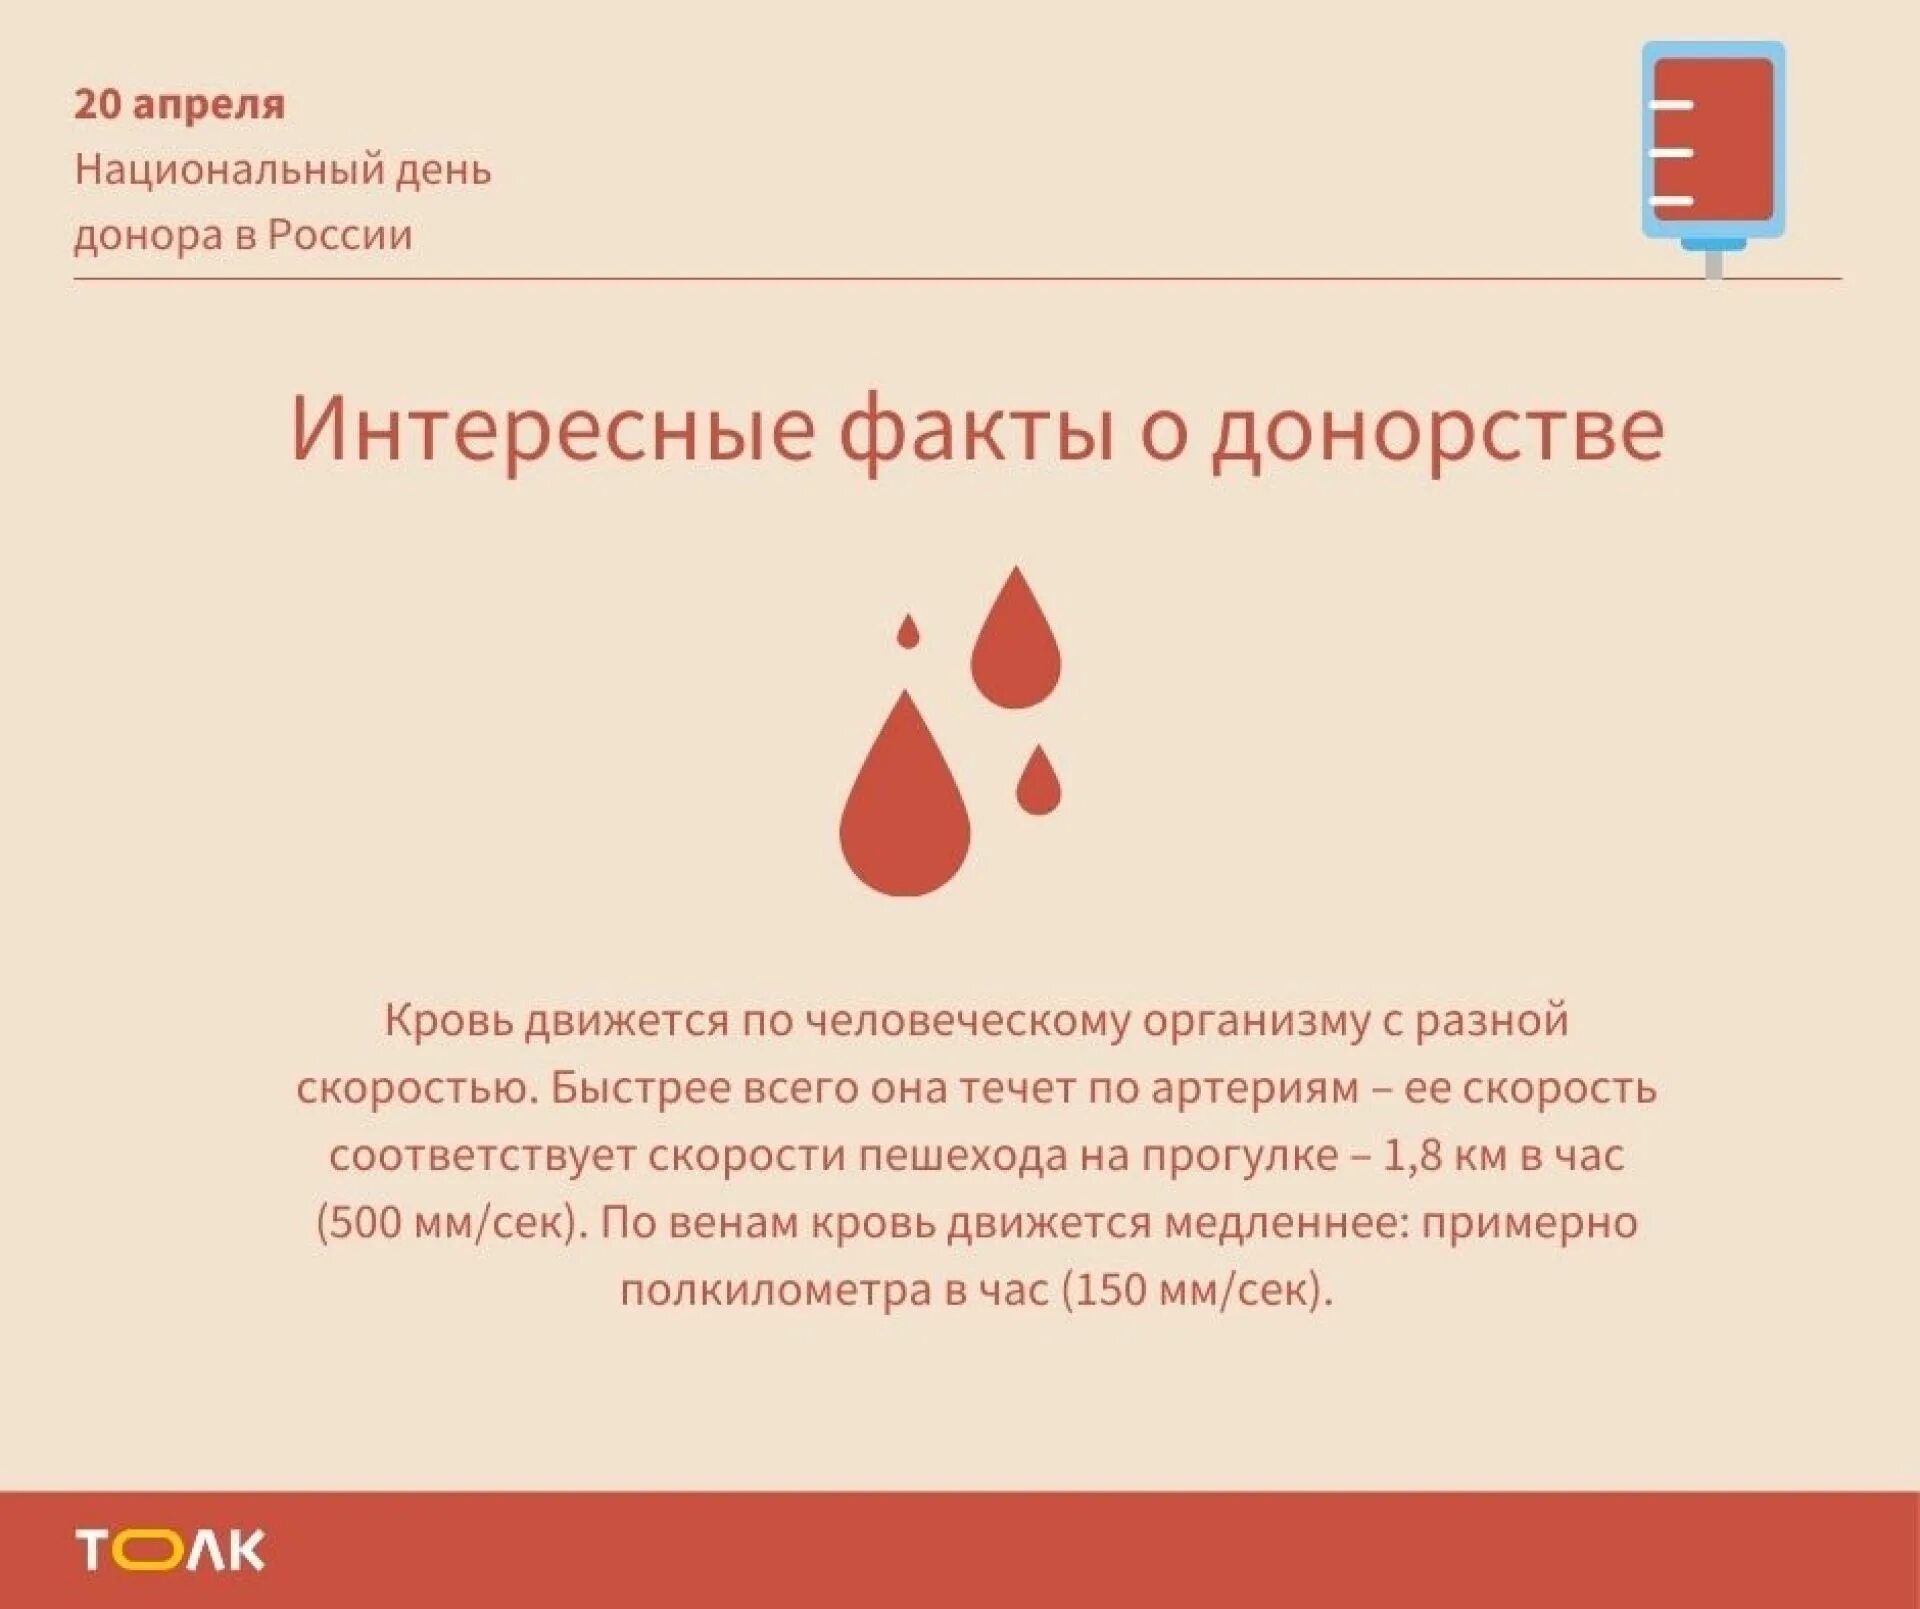 Что такое донация. День донора в России. Национальный день донора крови в России. 20 Апреля национальный день донора. День донора в России в 2021.